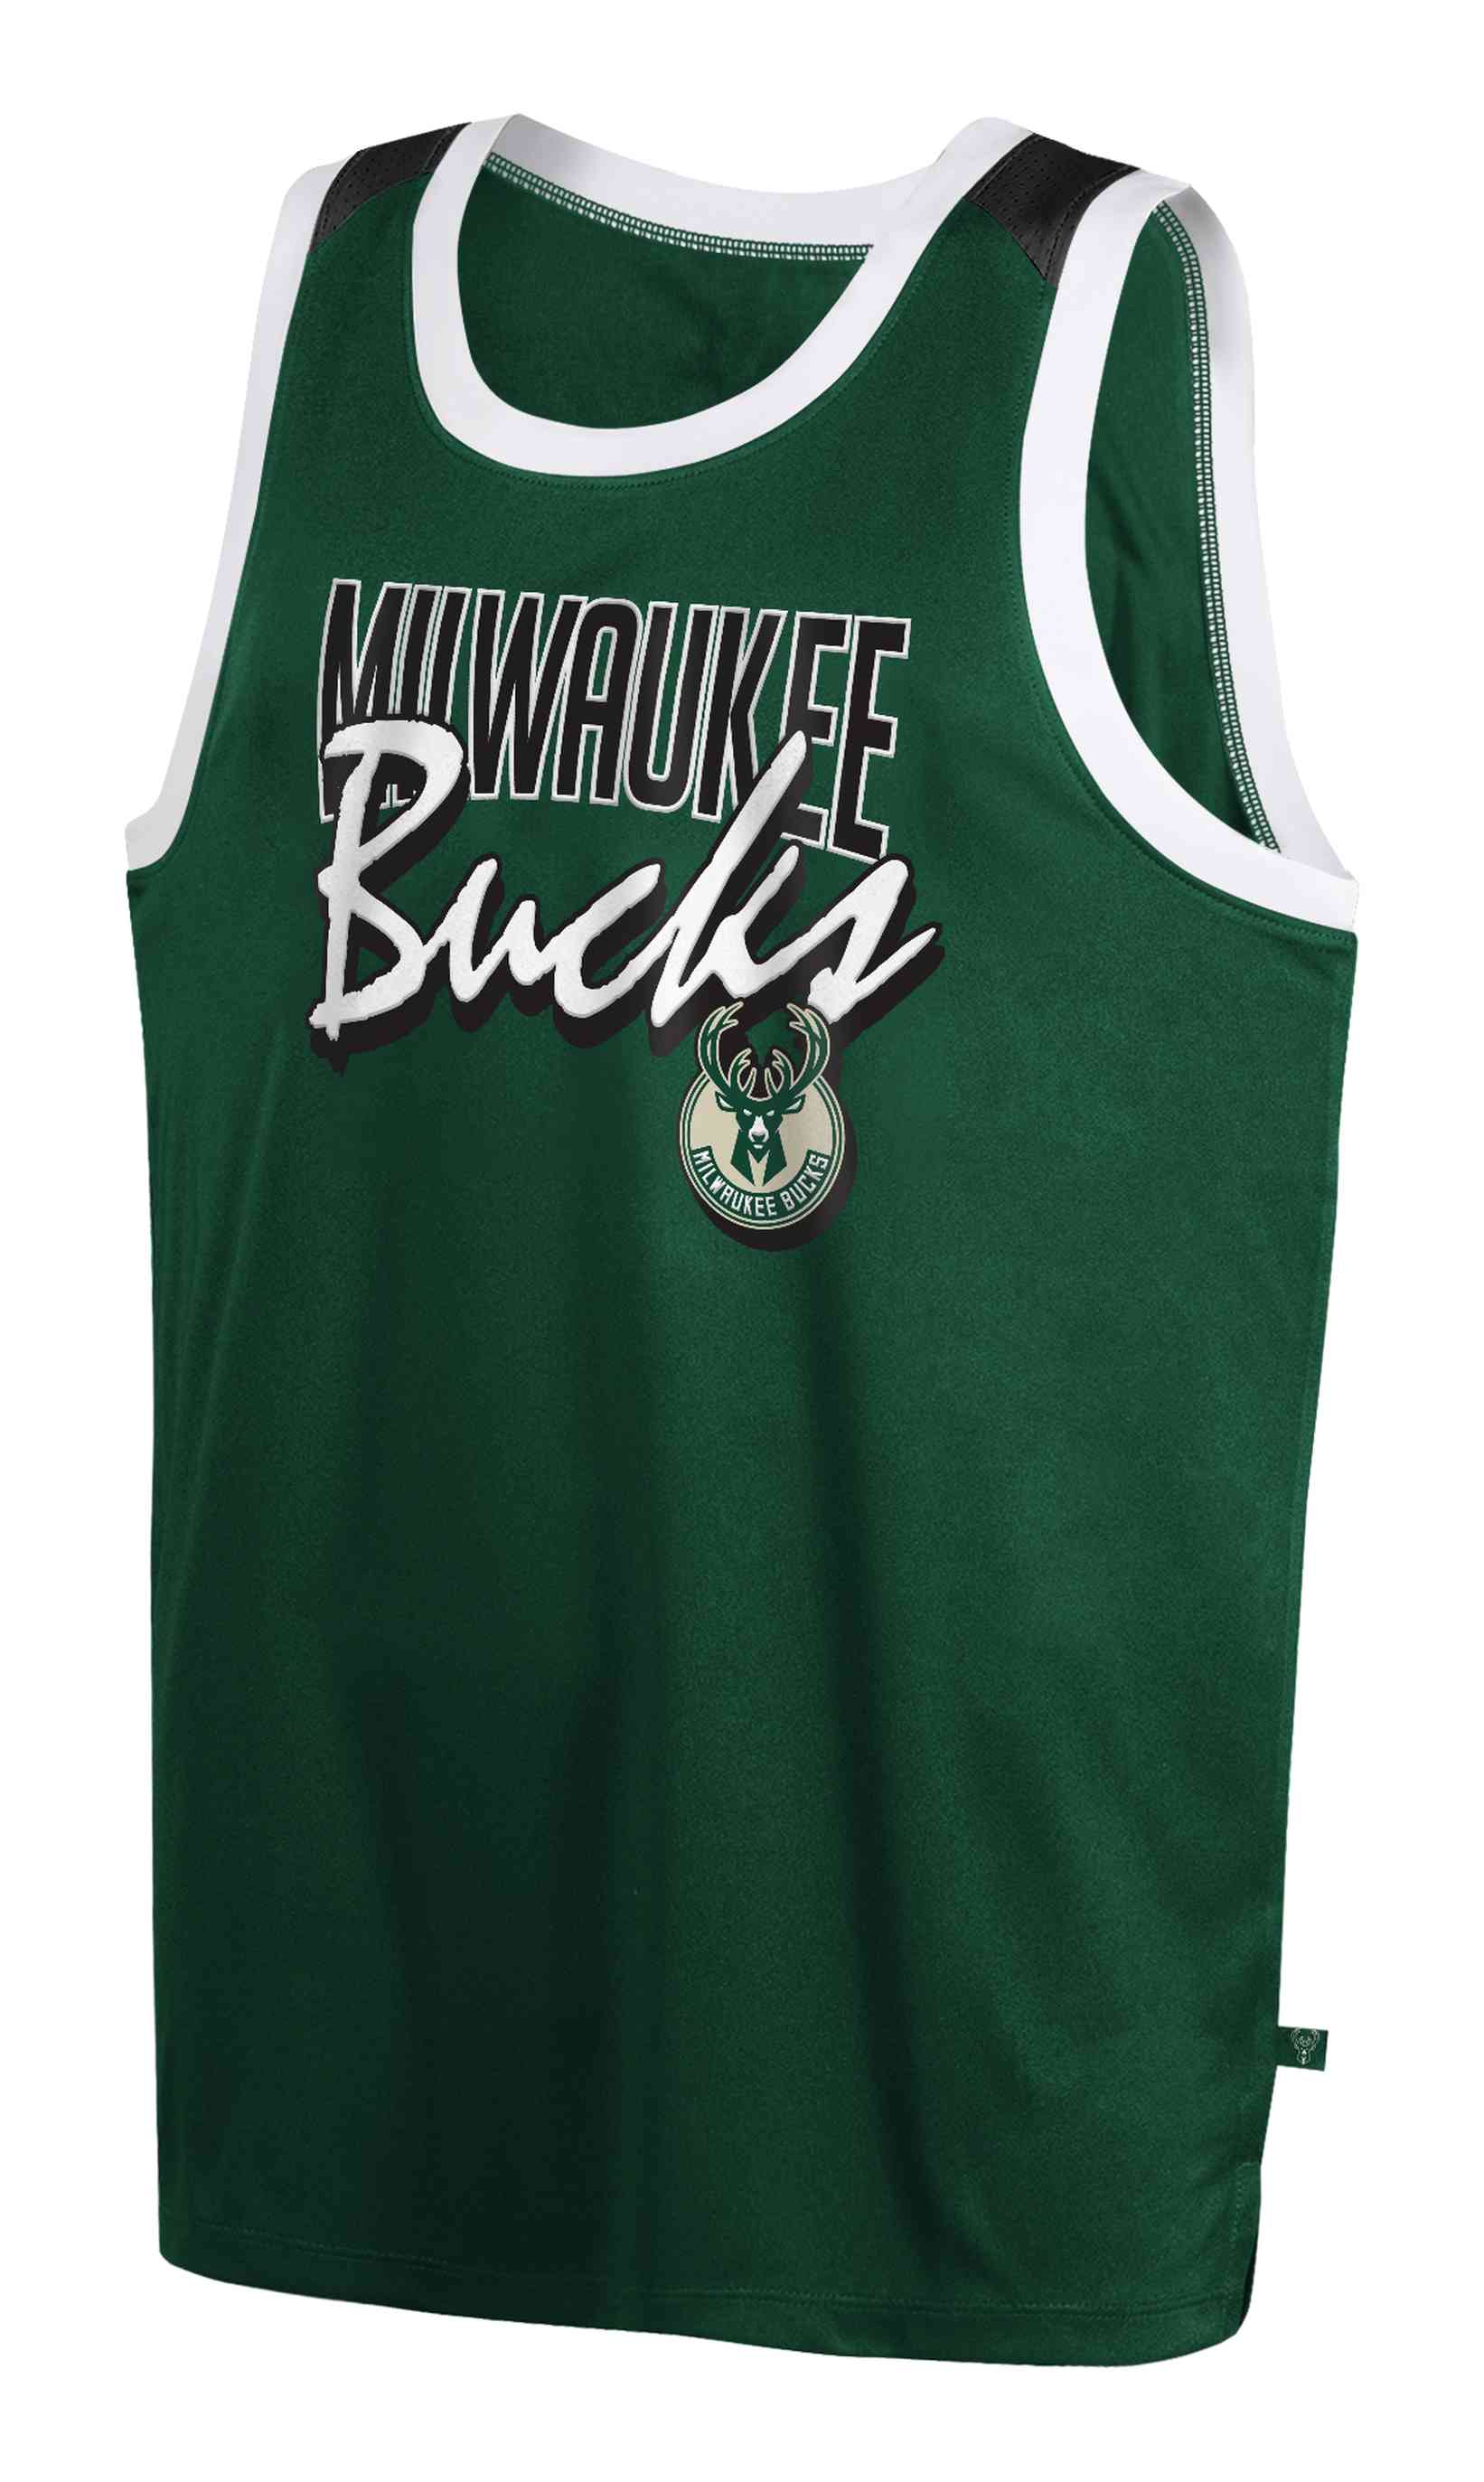 Outerstuff - NBA Milwaukee Bucks Giannis Antetokounmpo Crew Neck Shooter Tank Top